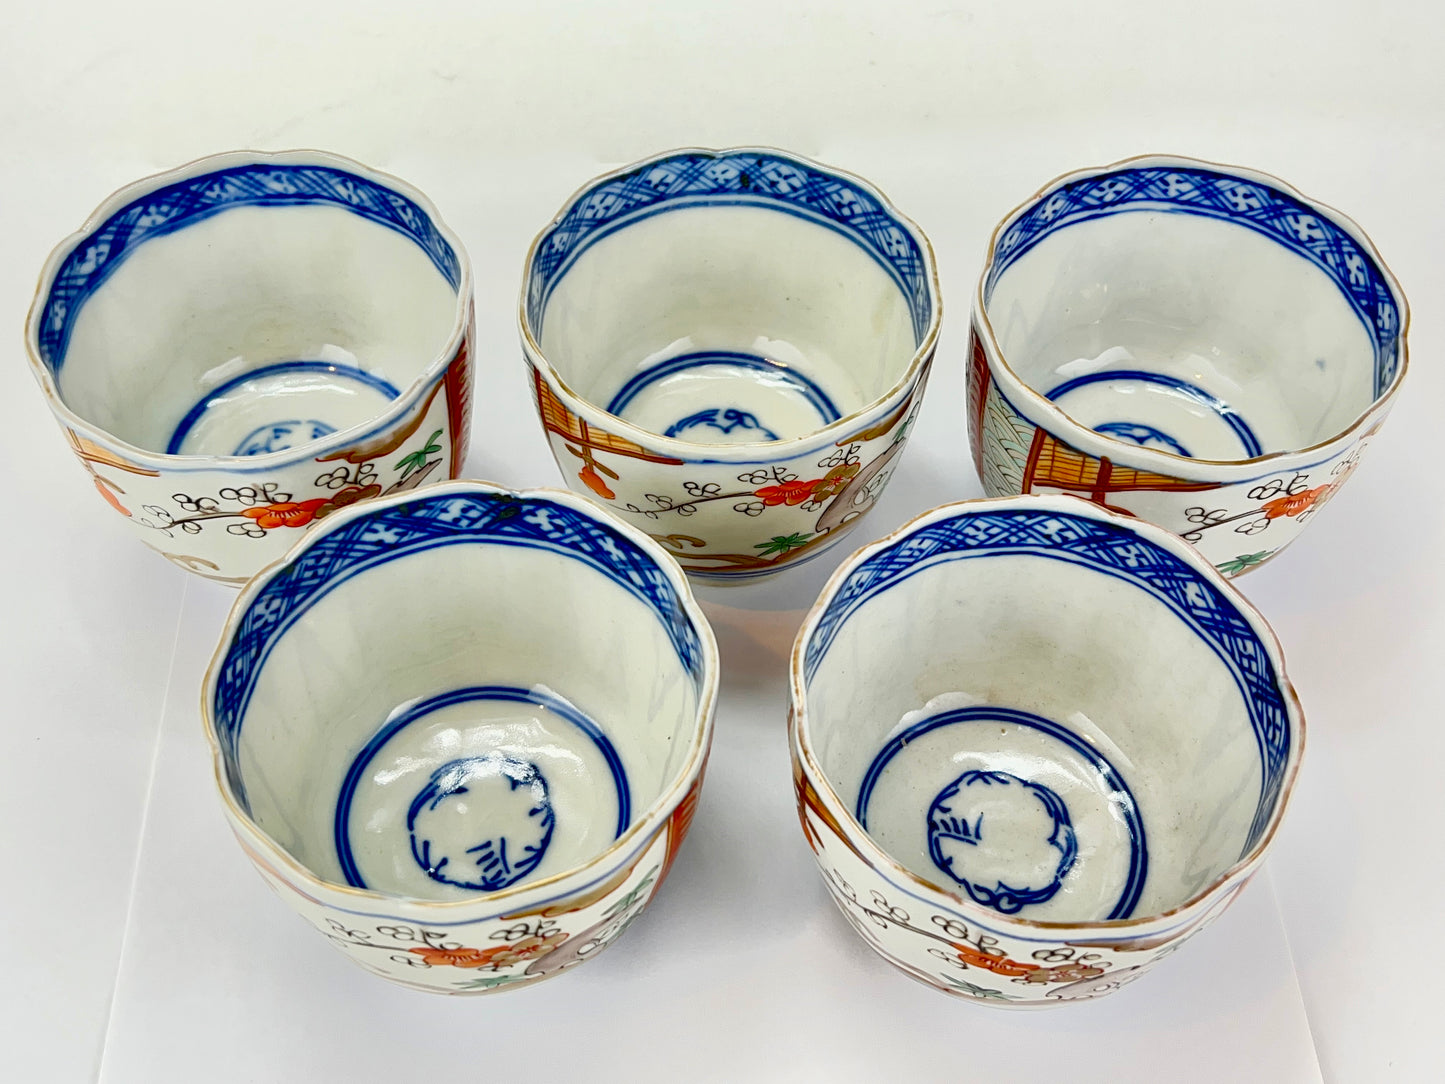 Antique Japanese Edo Era (c1850) Hand Painted Plum Blossom Ceramic Tea Cup 3.25"